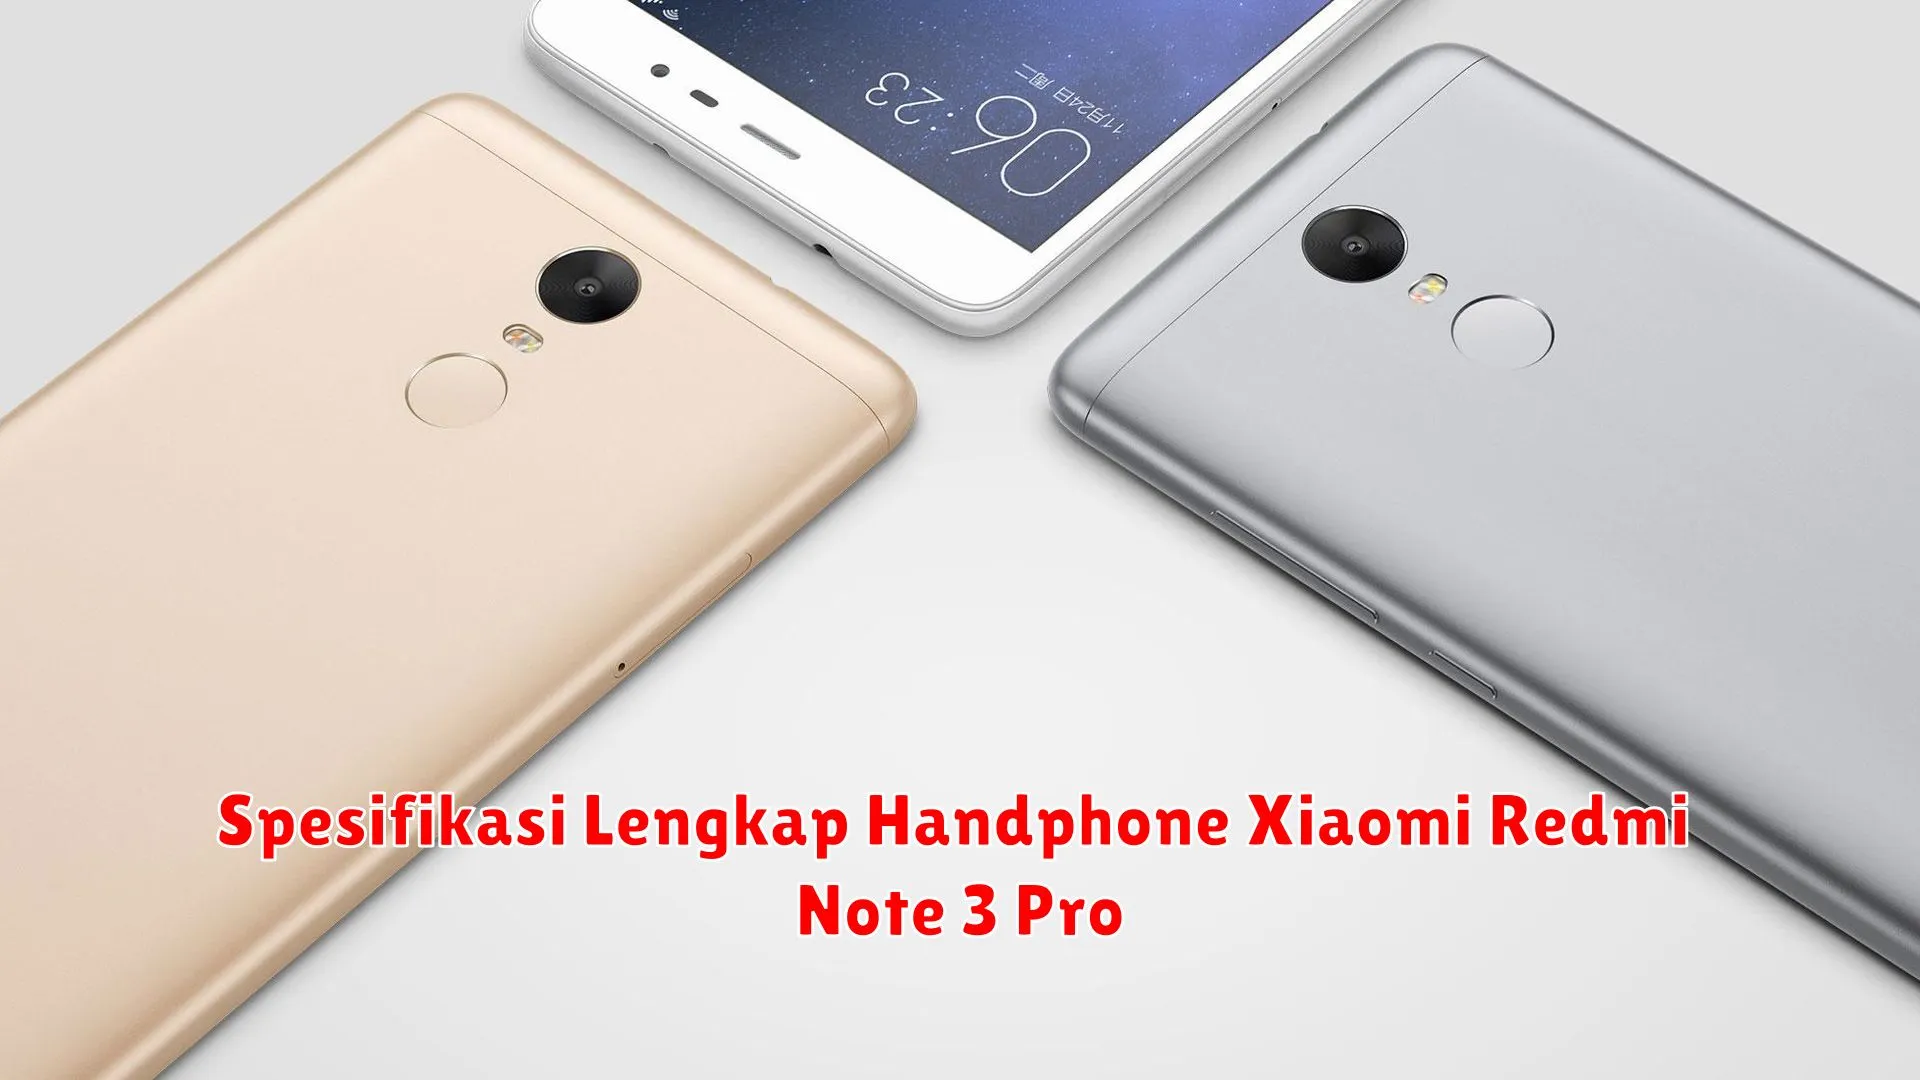 Spesifikasi Lengkap Handphone Xiaomi Redmi Note 3 Pro